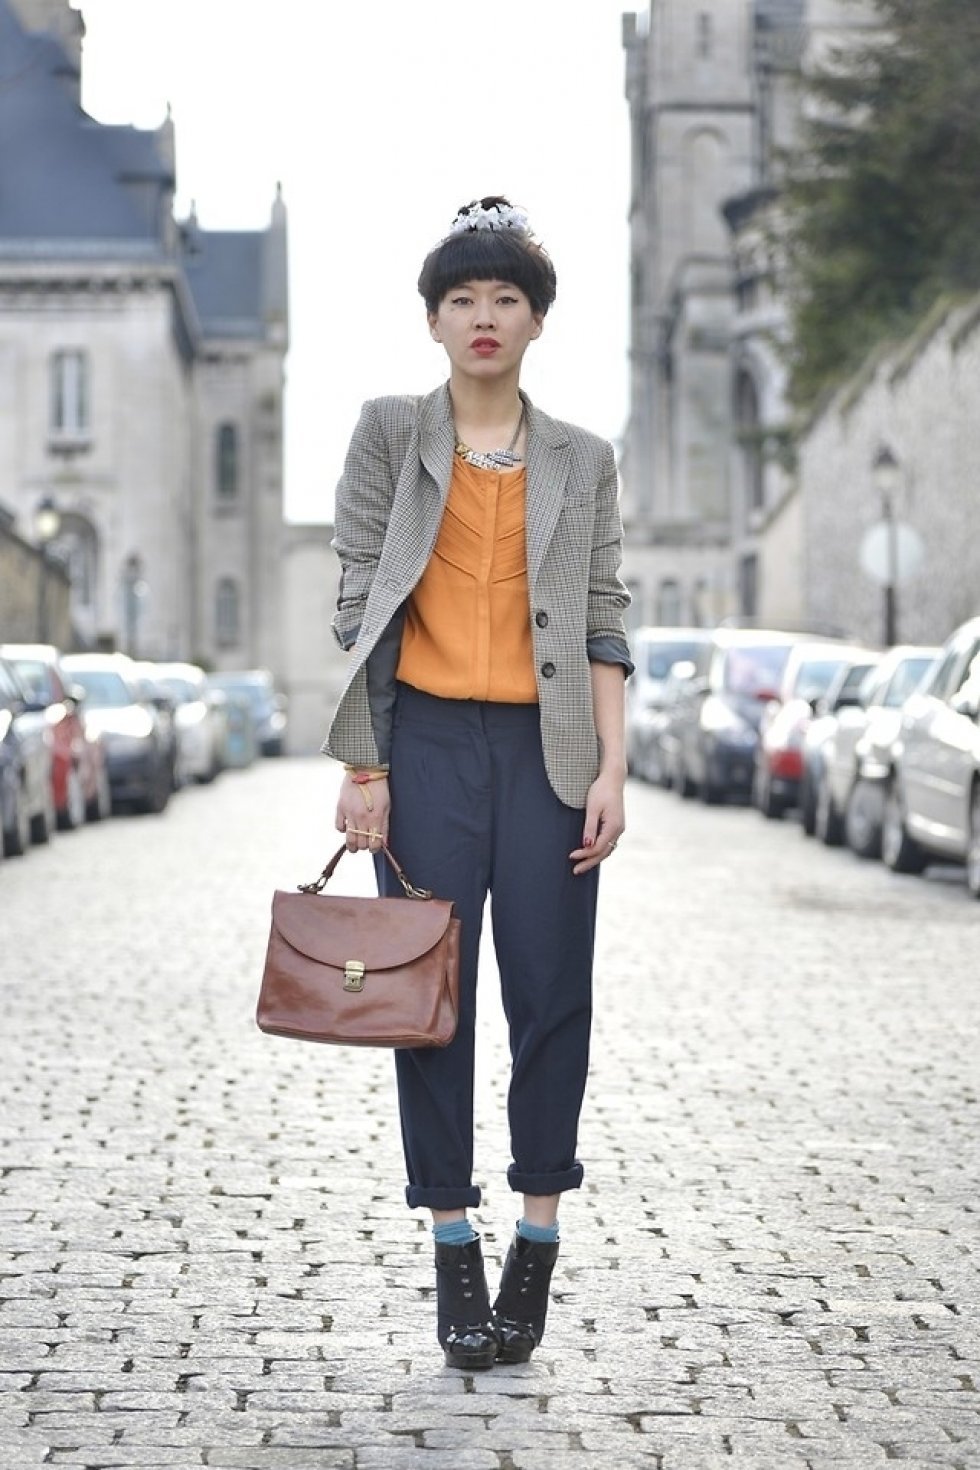 Foto: http://lookbook.nu/look/4569849-Zara-Blazer-Top-Dress-Gallery-Bag-Vintage-Pants - Inspiration: Den herreinspirerede blazer